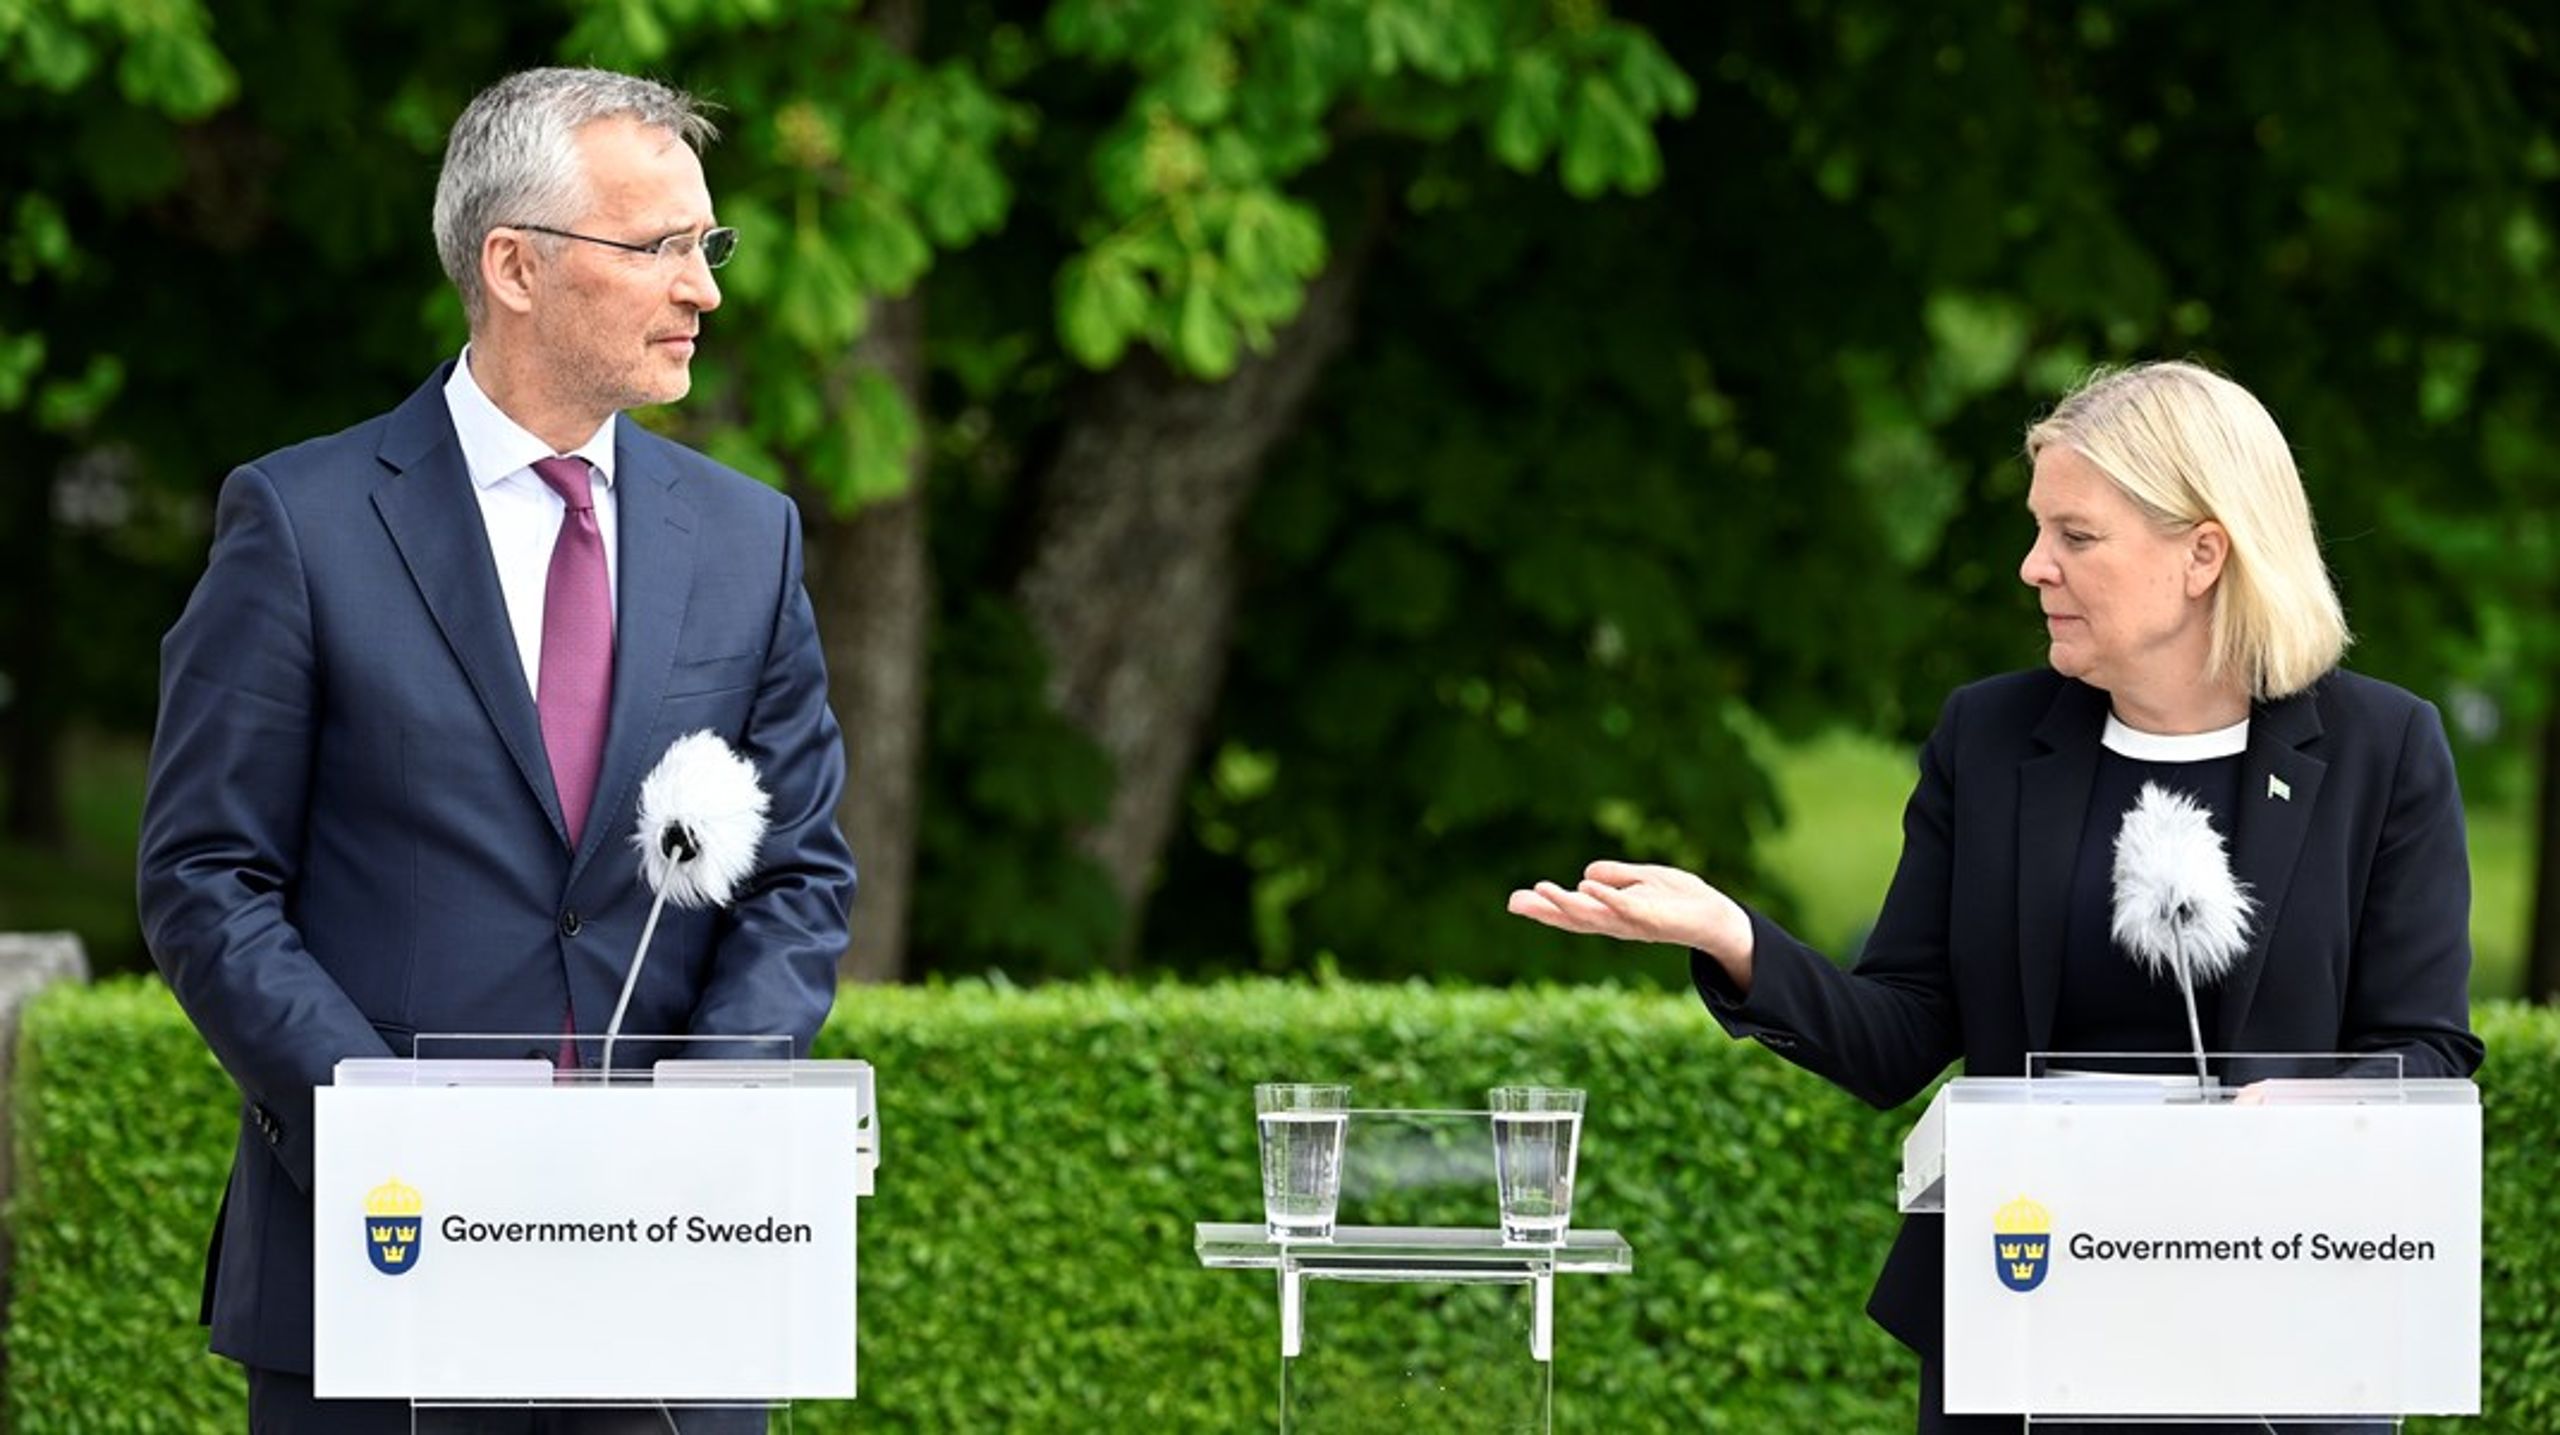 Den svenske statsminister og Natos generalsekretær ved et møde, hvor de&nbsp;formentligt havde&nbsp;nok at diskutere. For at Sverige har søgt om medlemskab er ikke&nbsp;kun et kæmpeskridt efter 200 år med neutralitet og allianceløshed, men også fuldstændig uventet,&nbsp;skriver Ann-Sophie Dahl.&nbsp;<br><br>